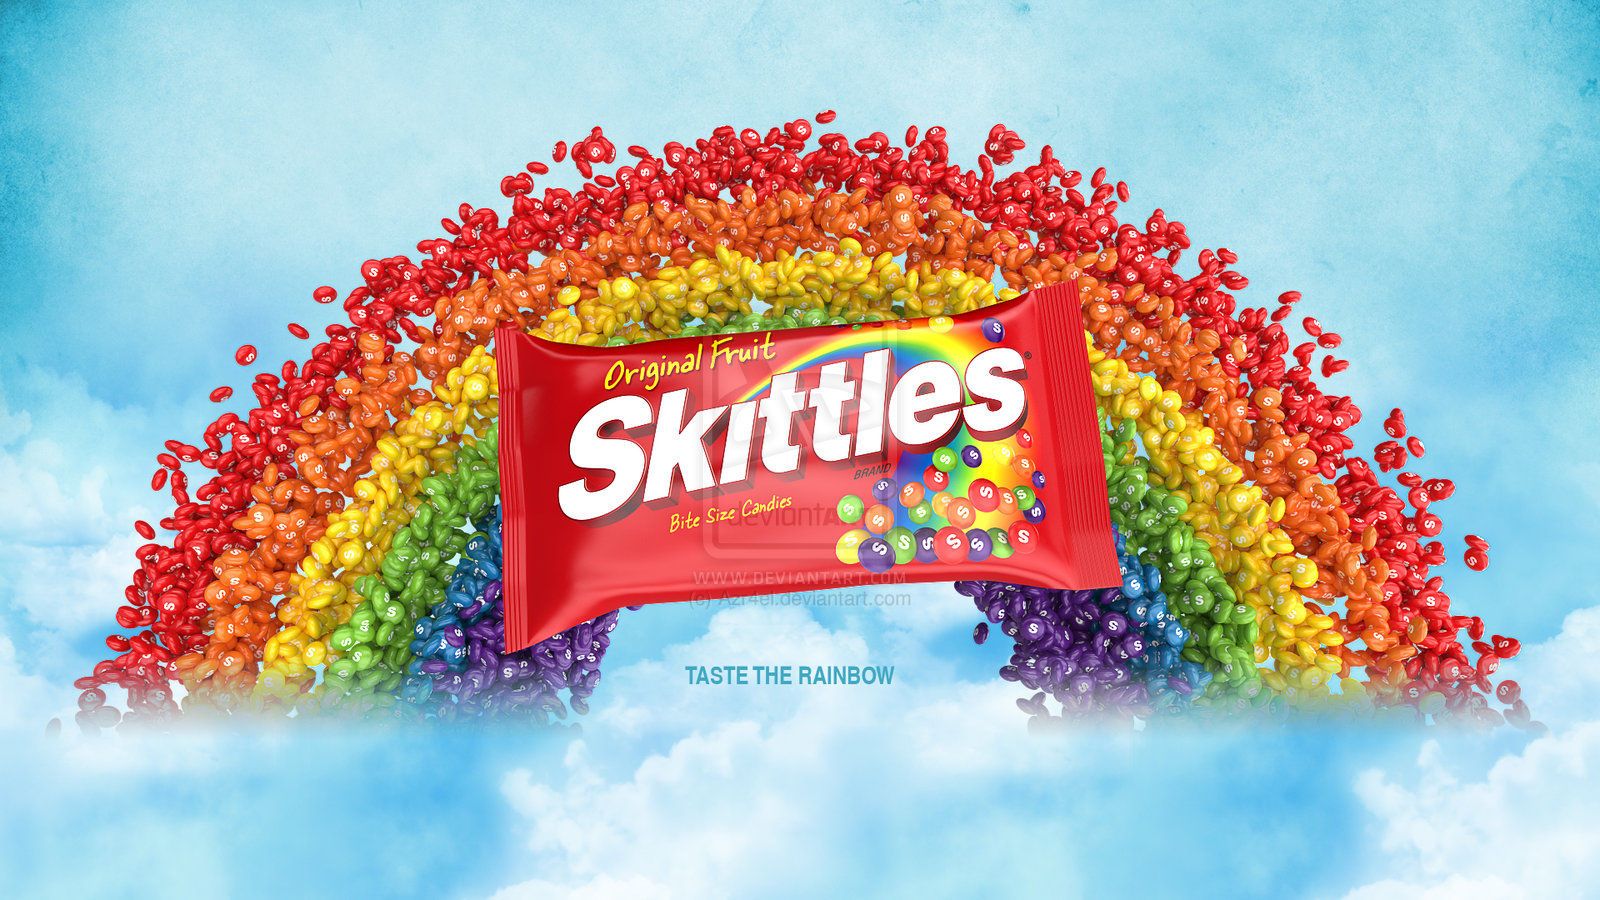 Skittles "Taste the Rainbow"